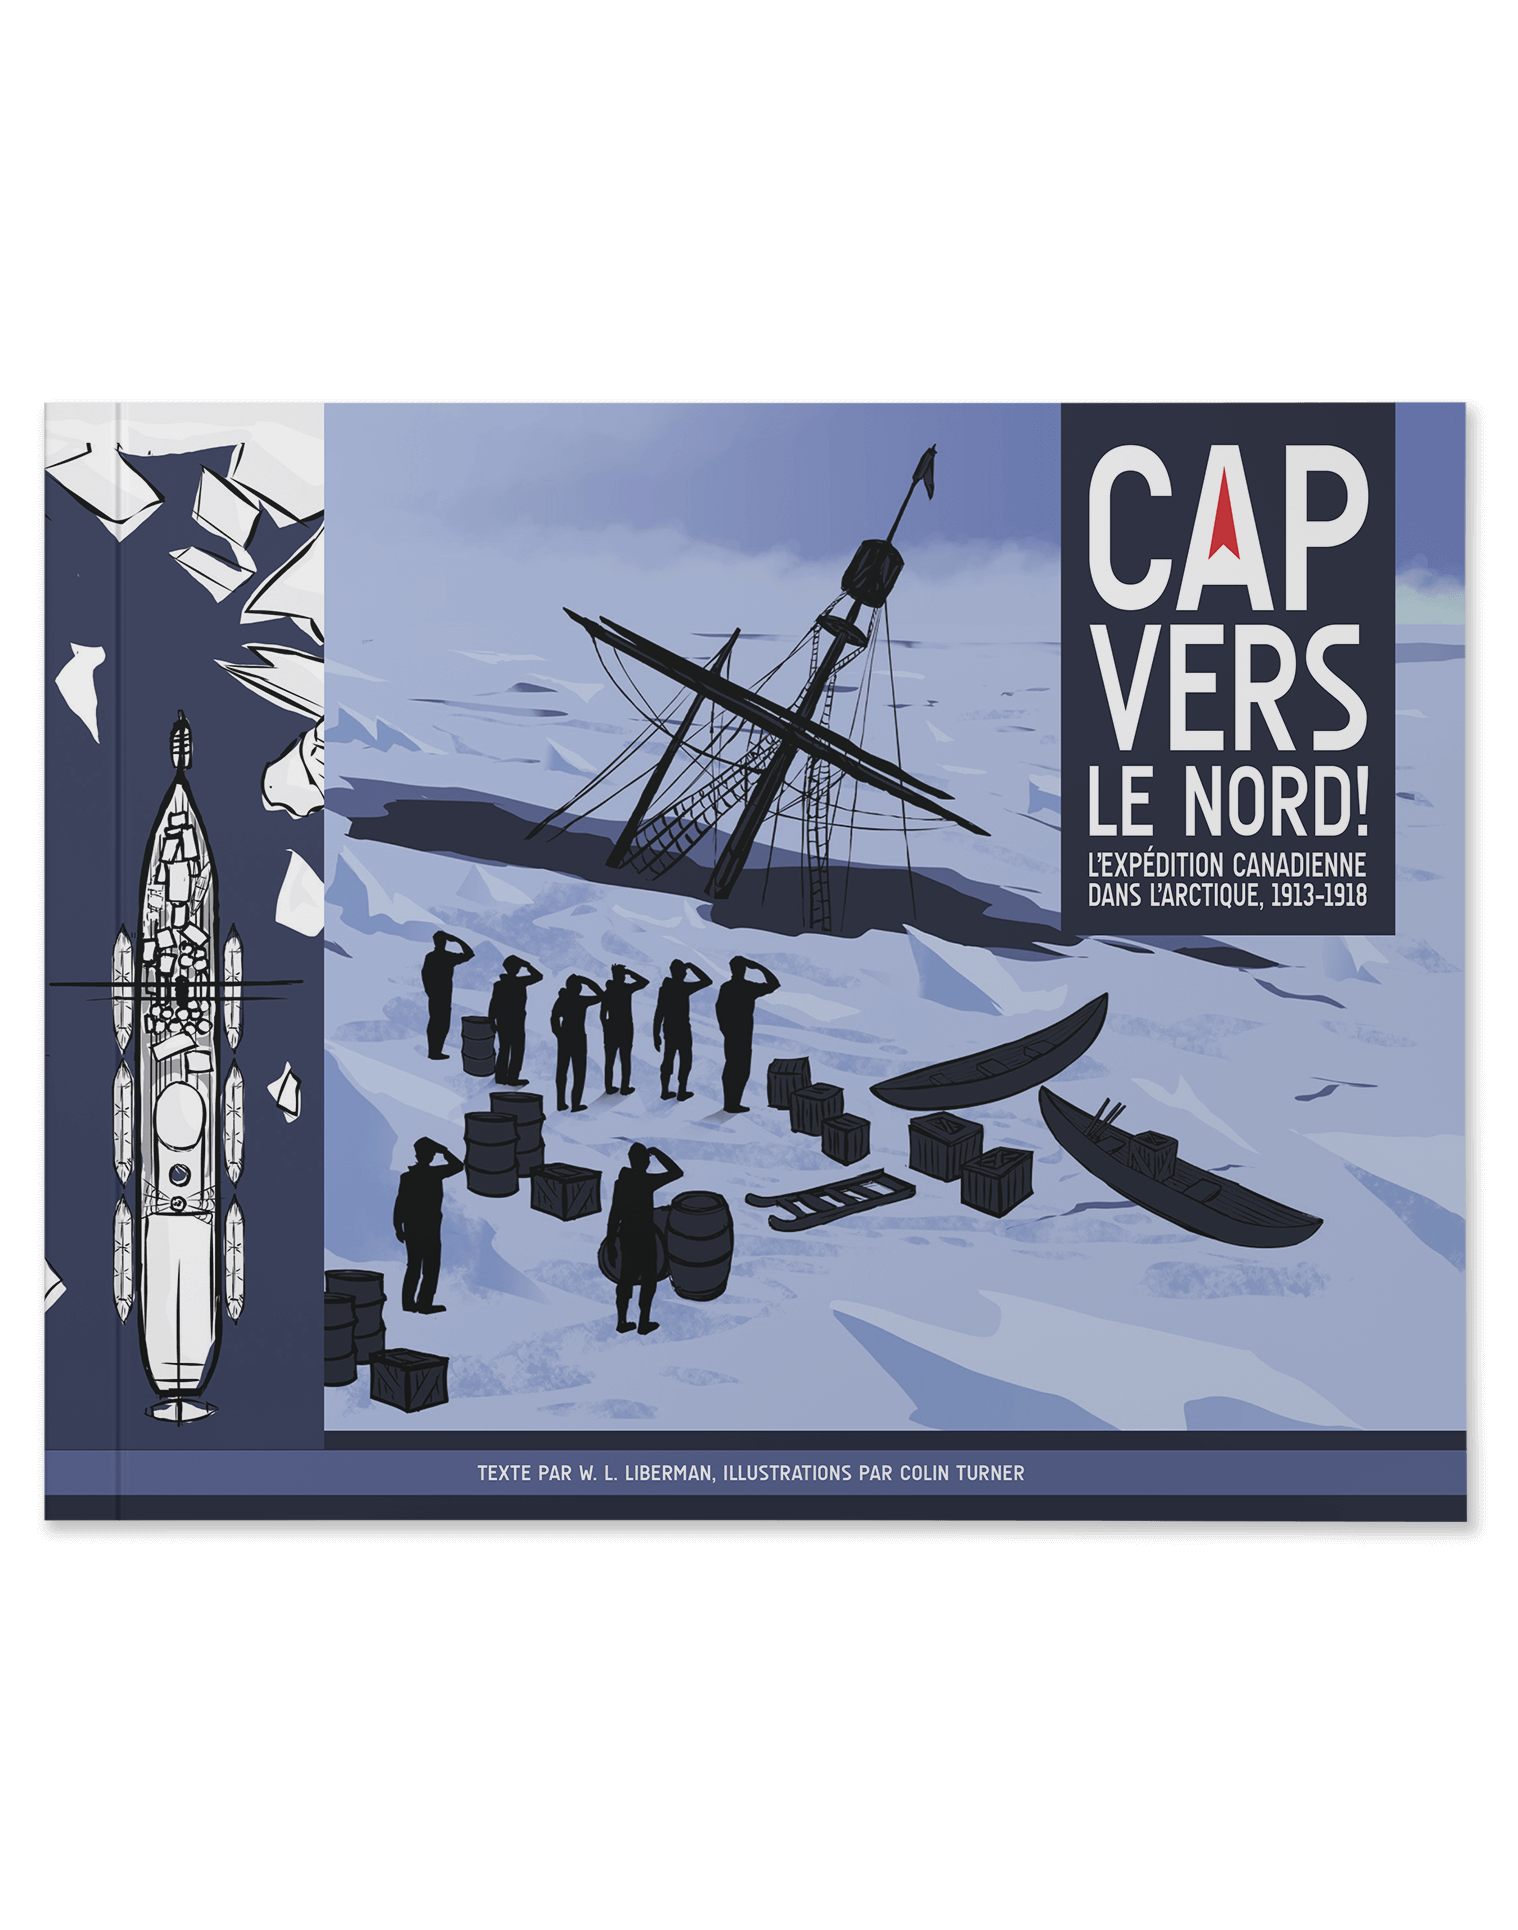 Caps vers le nord! L'expédition canadienne dans l'arctique, 1913-1918